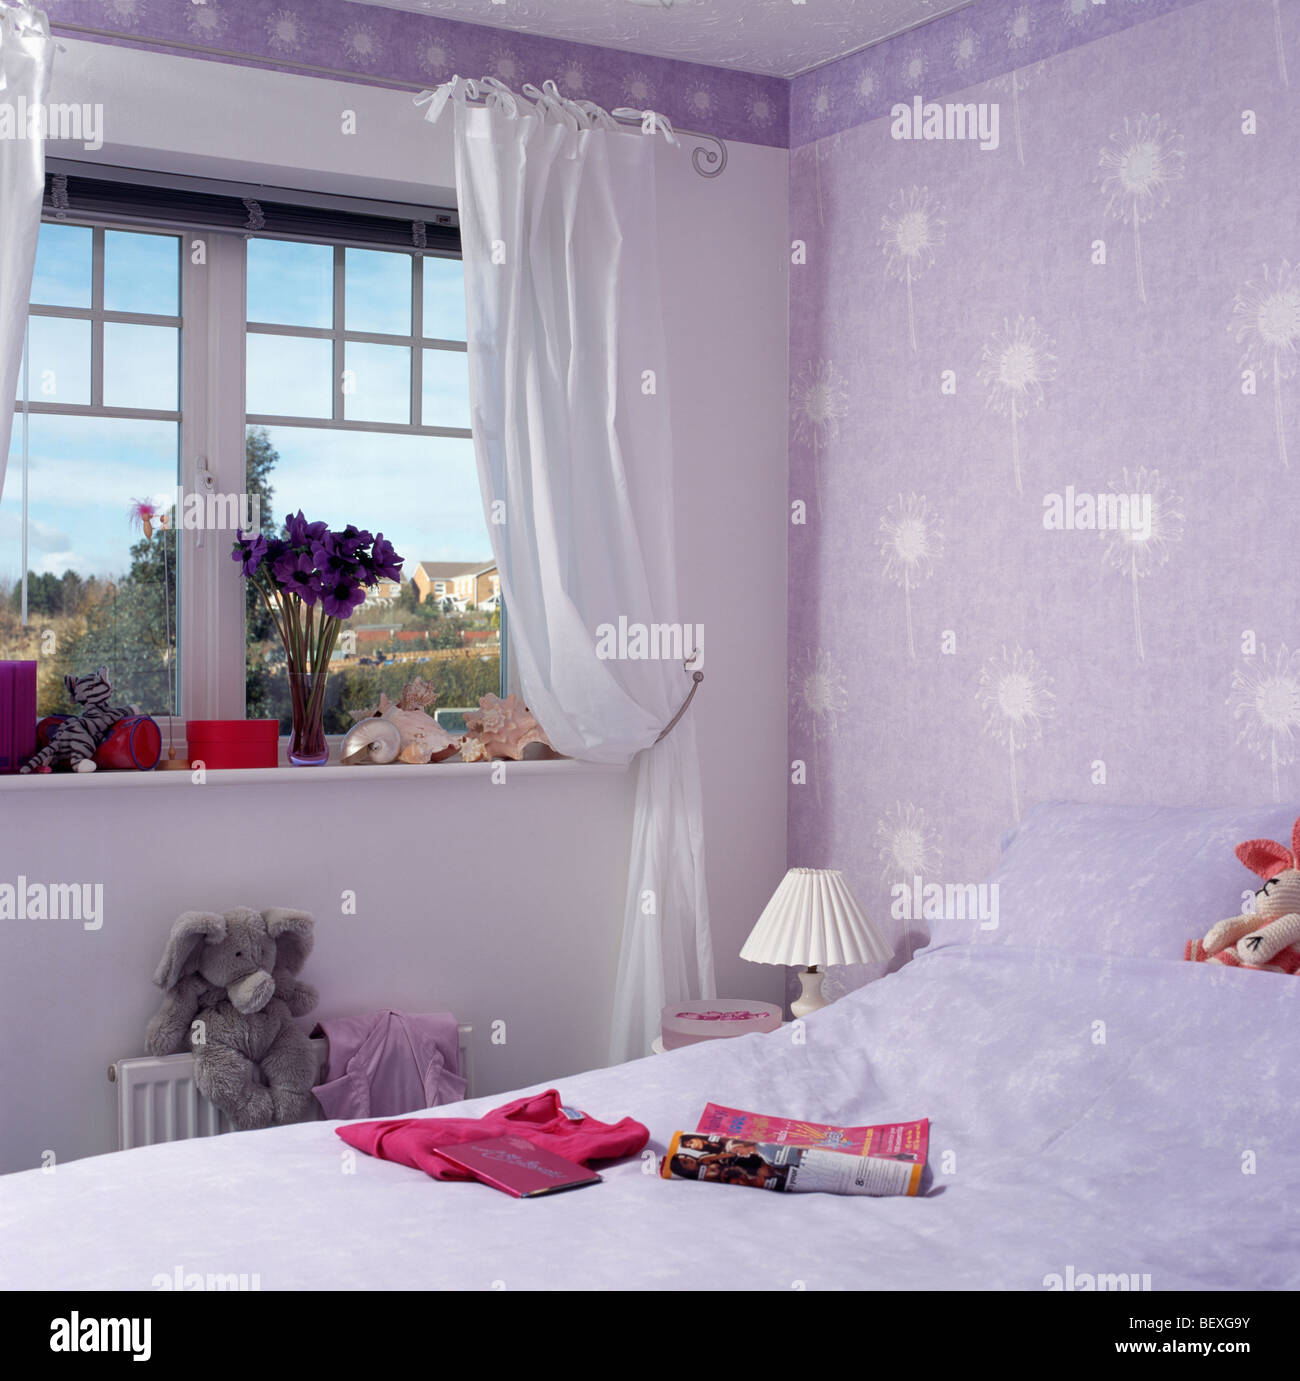 https://c8.alamy.com/compes/bexg9y/cortinas-blancas-en-la-ventana-en-la-pequena-economia-infantil-dormitorio-de-estilo-con-telas-de-color-malva-papel-tapiz-bexg9y.jpg